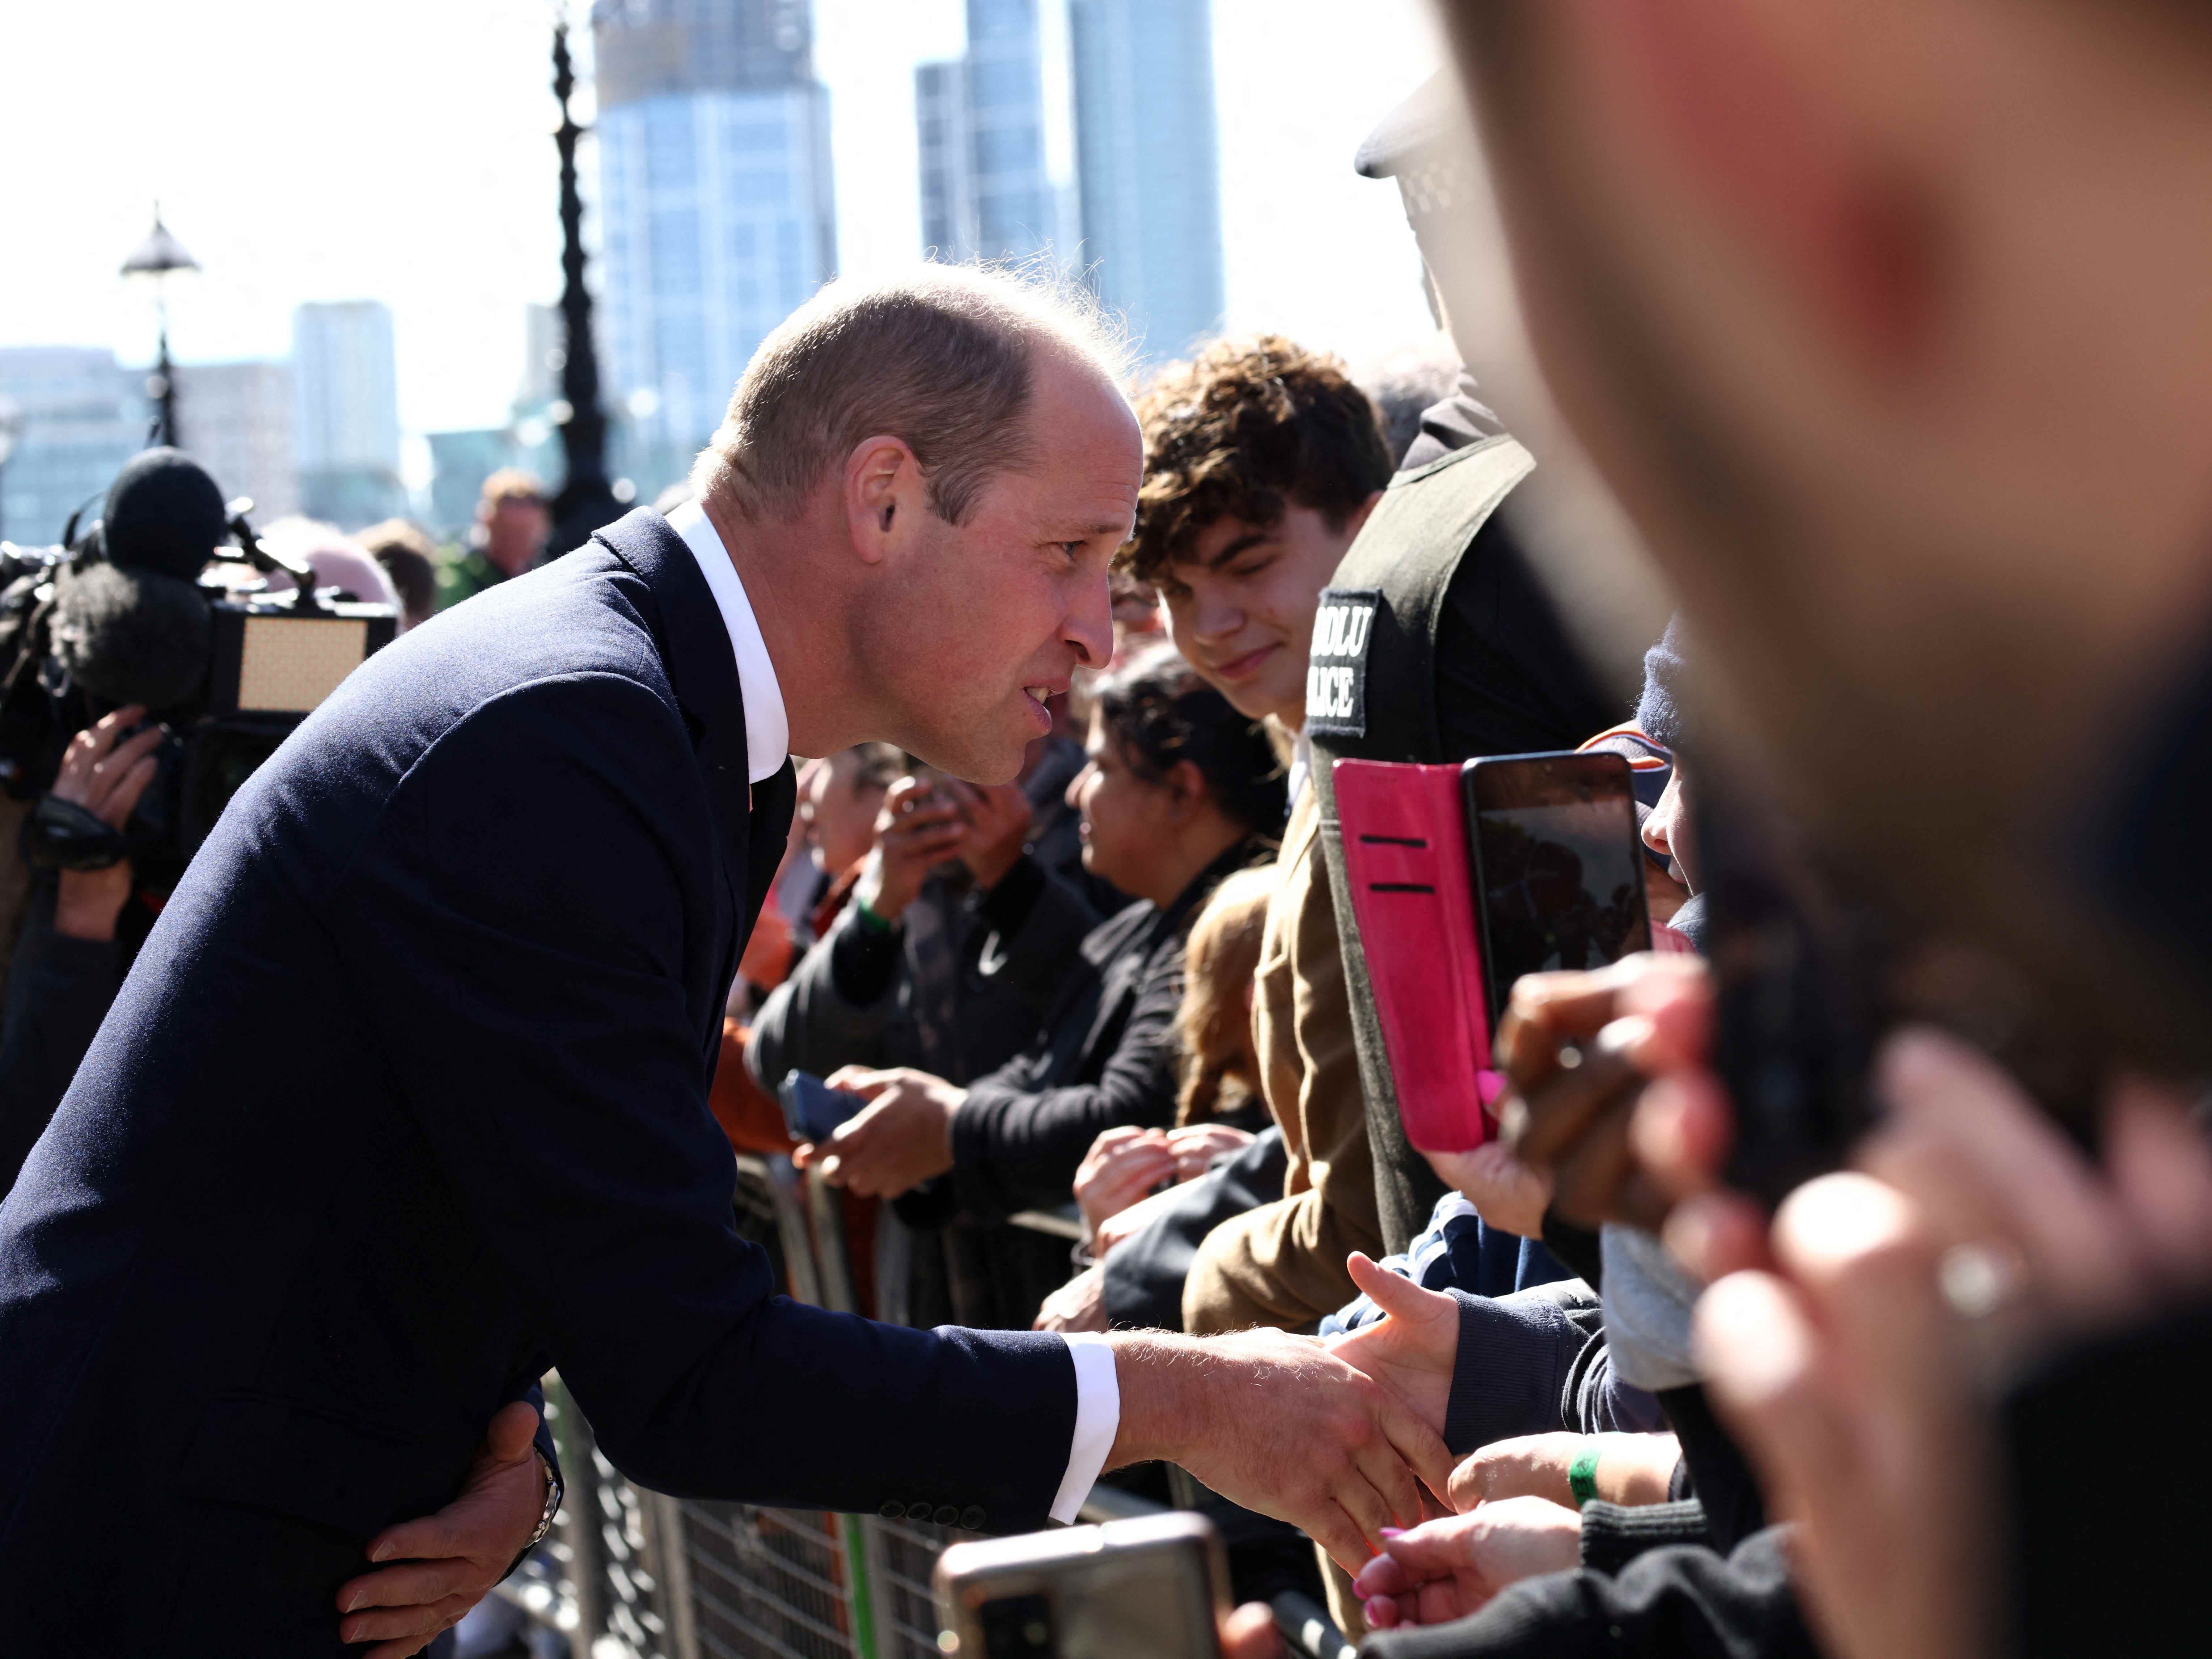 Der britische Prinz William begrüßt Menschen, die Schlange stehen, um der britischen Königin Elizabeth nach ihrem Tod am 17. September 2022 in London, Großbritannien, ihre Aufwartung zu machen.